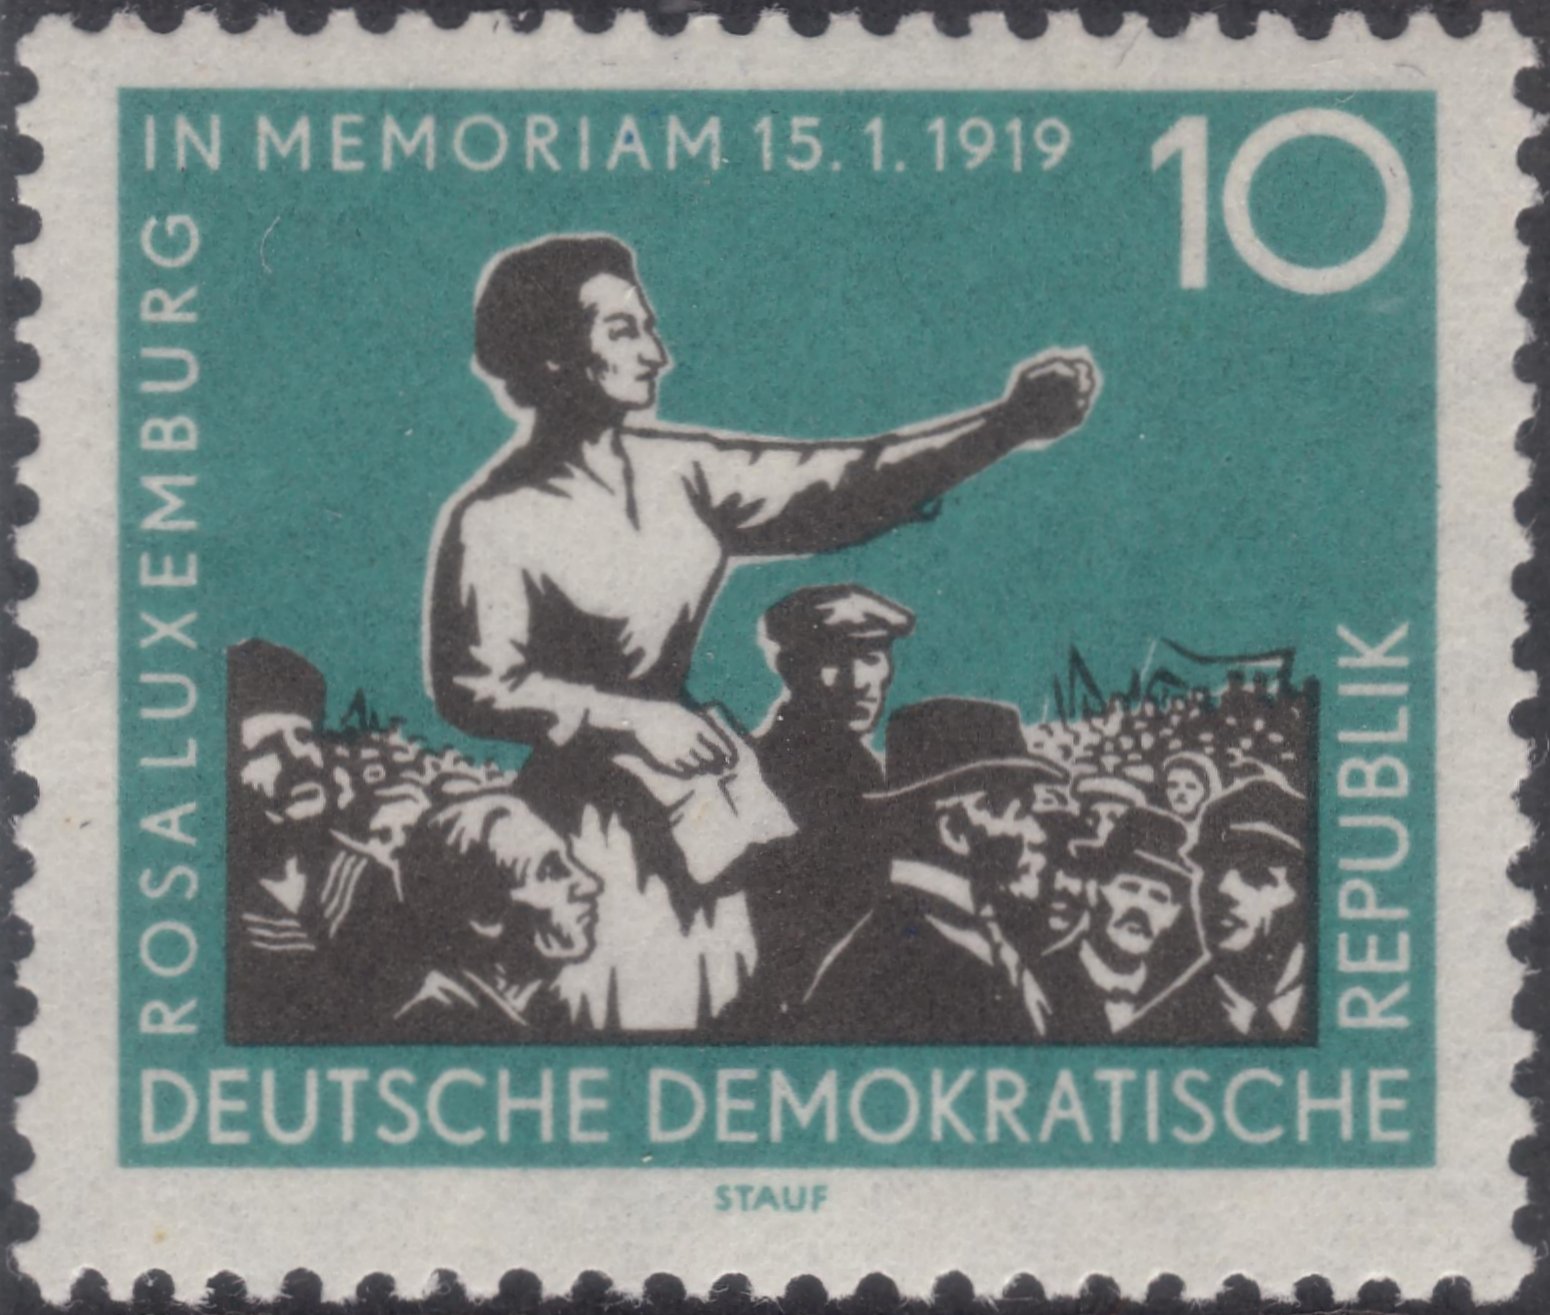 Rosa Luxemburg - In Memoriam 15.1.1919